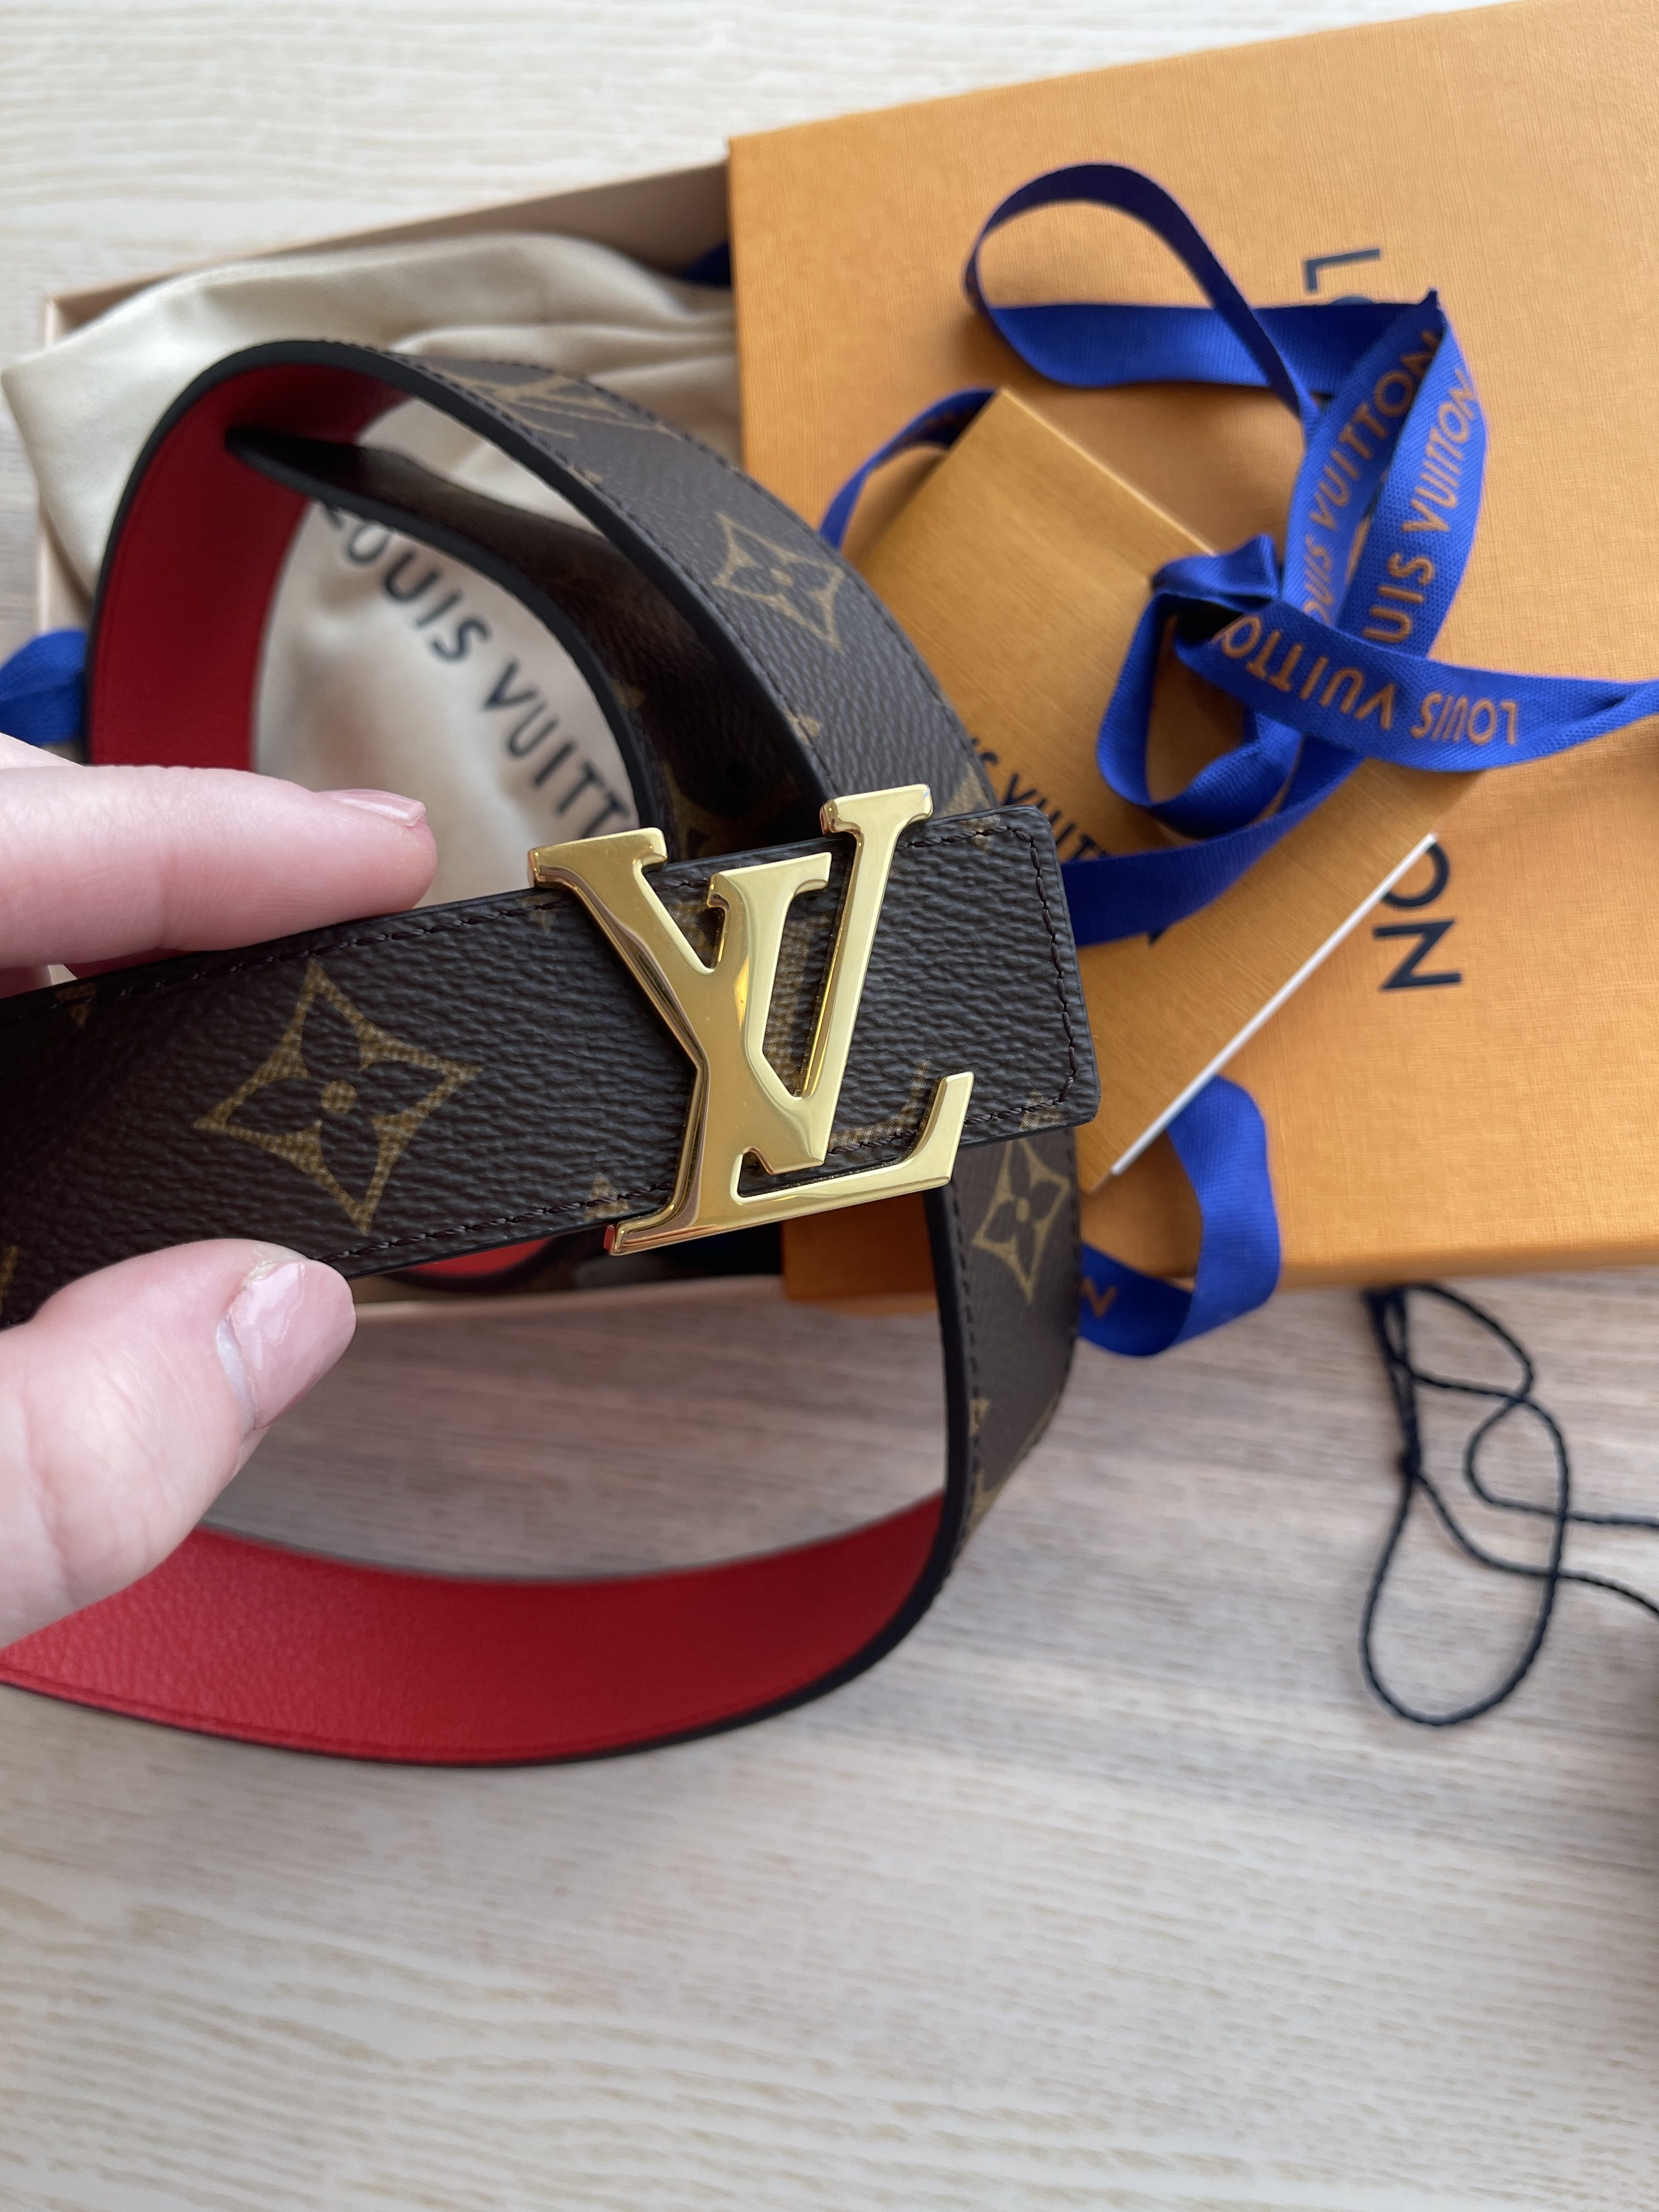 Louis Vuitton LV Initiales 30mm Reversible Belt - Size 38